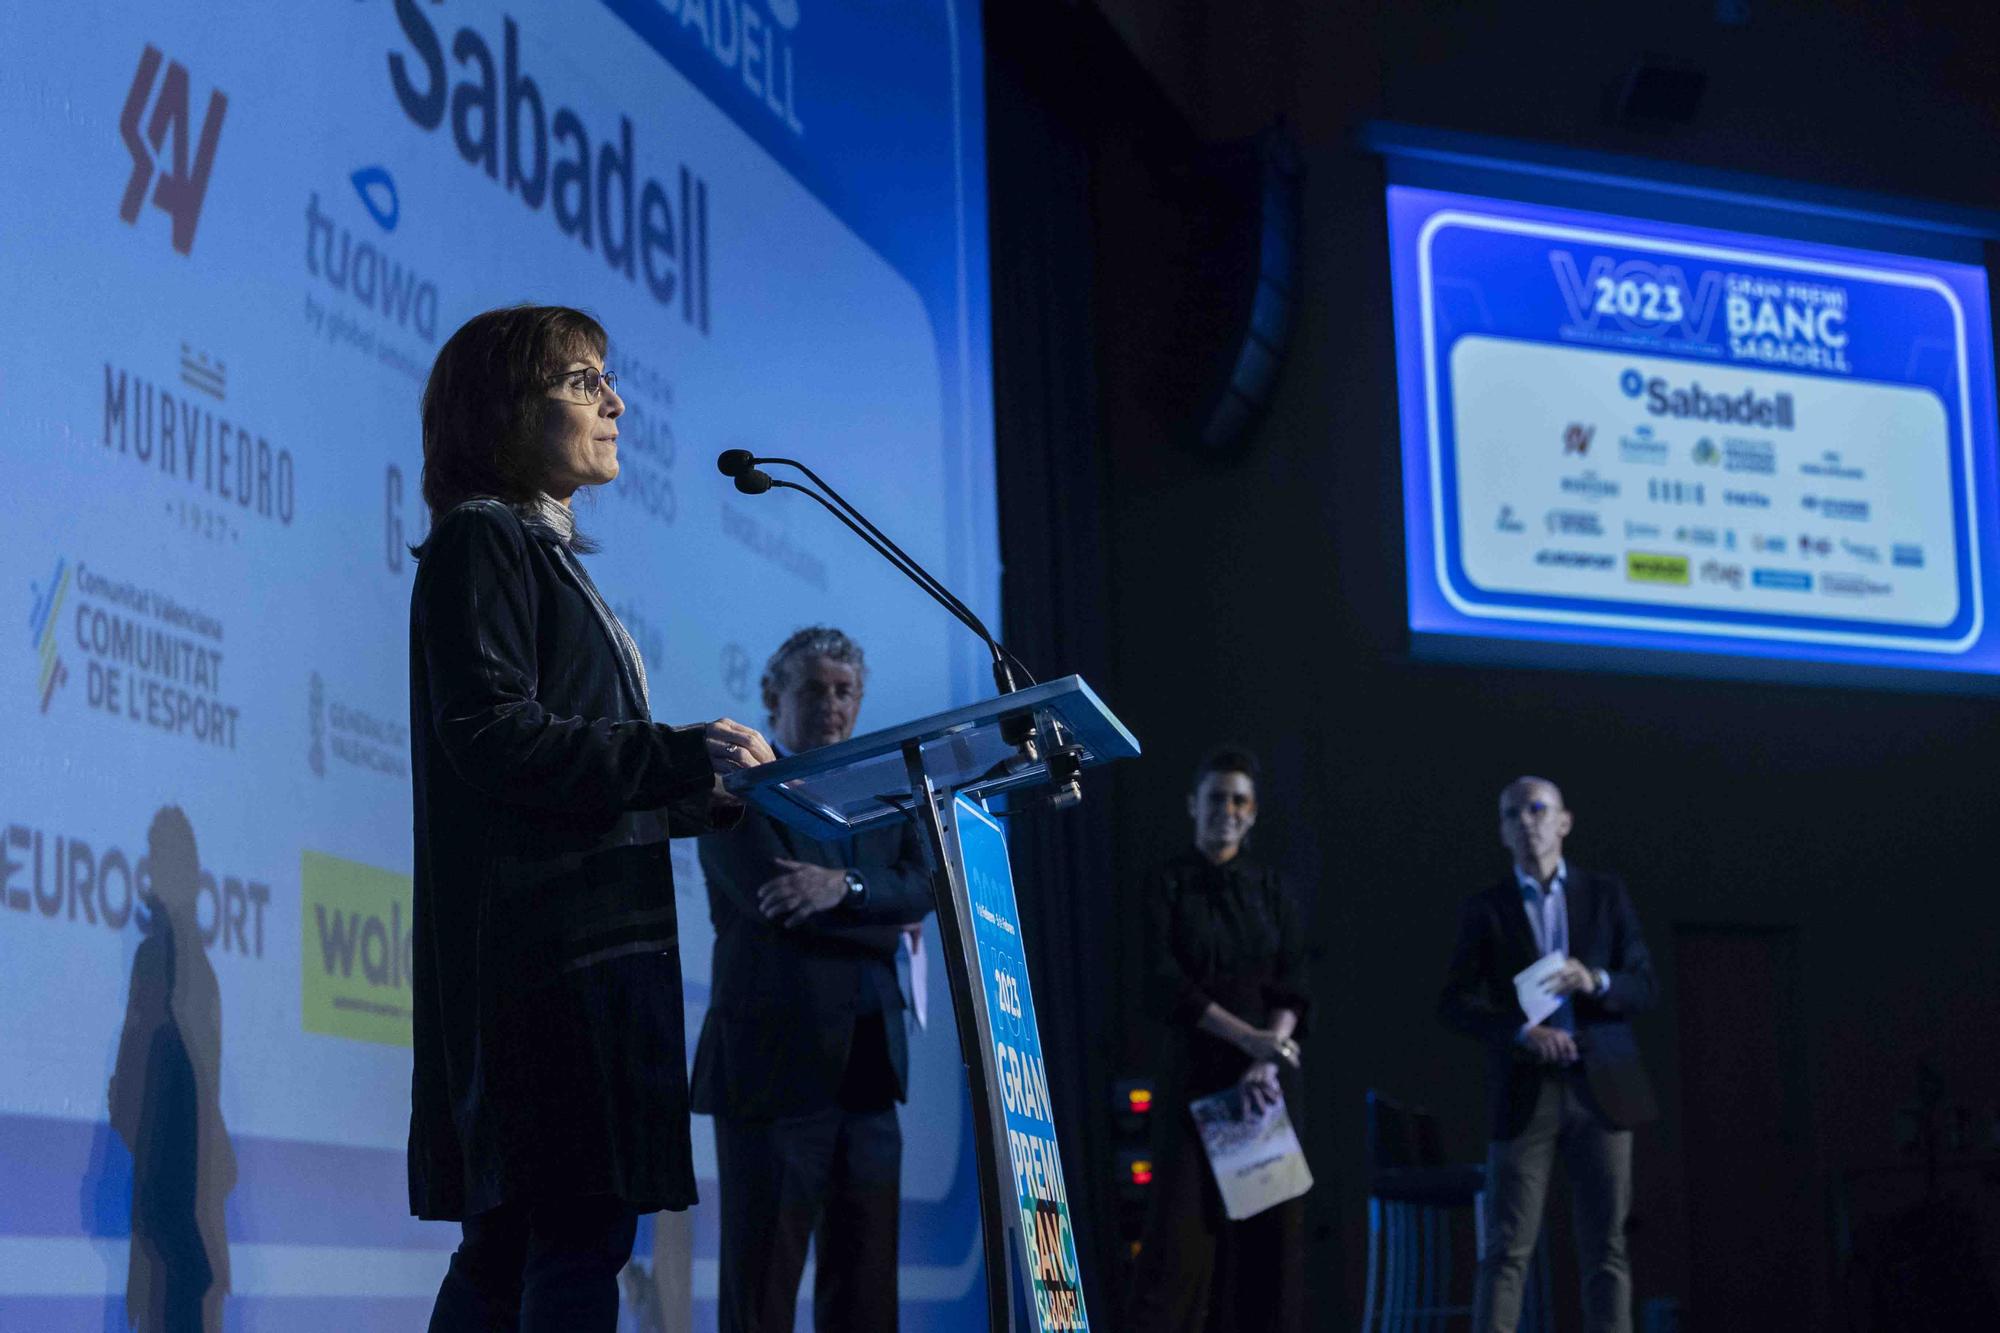 Volta a la Comunitat Valenciana Gran Premi Banc Sabadell